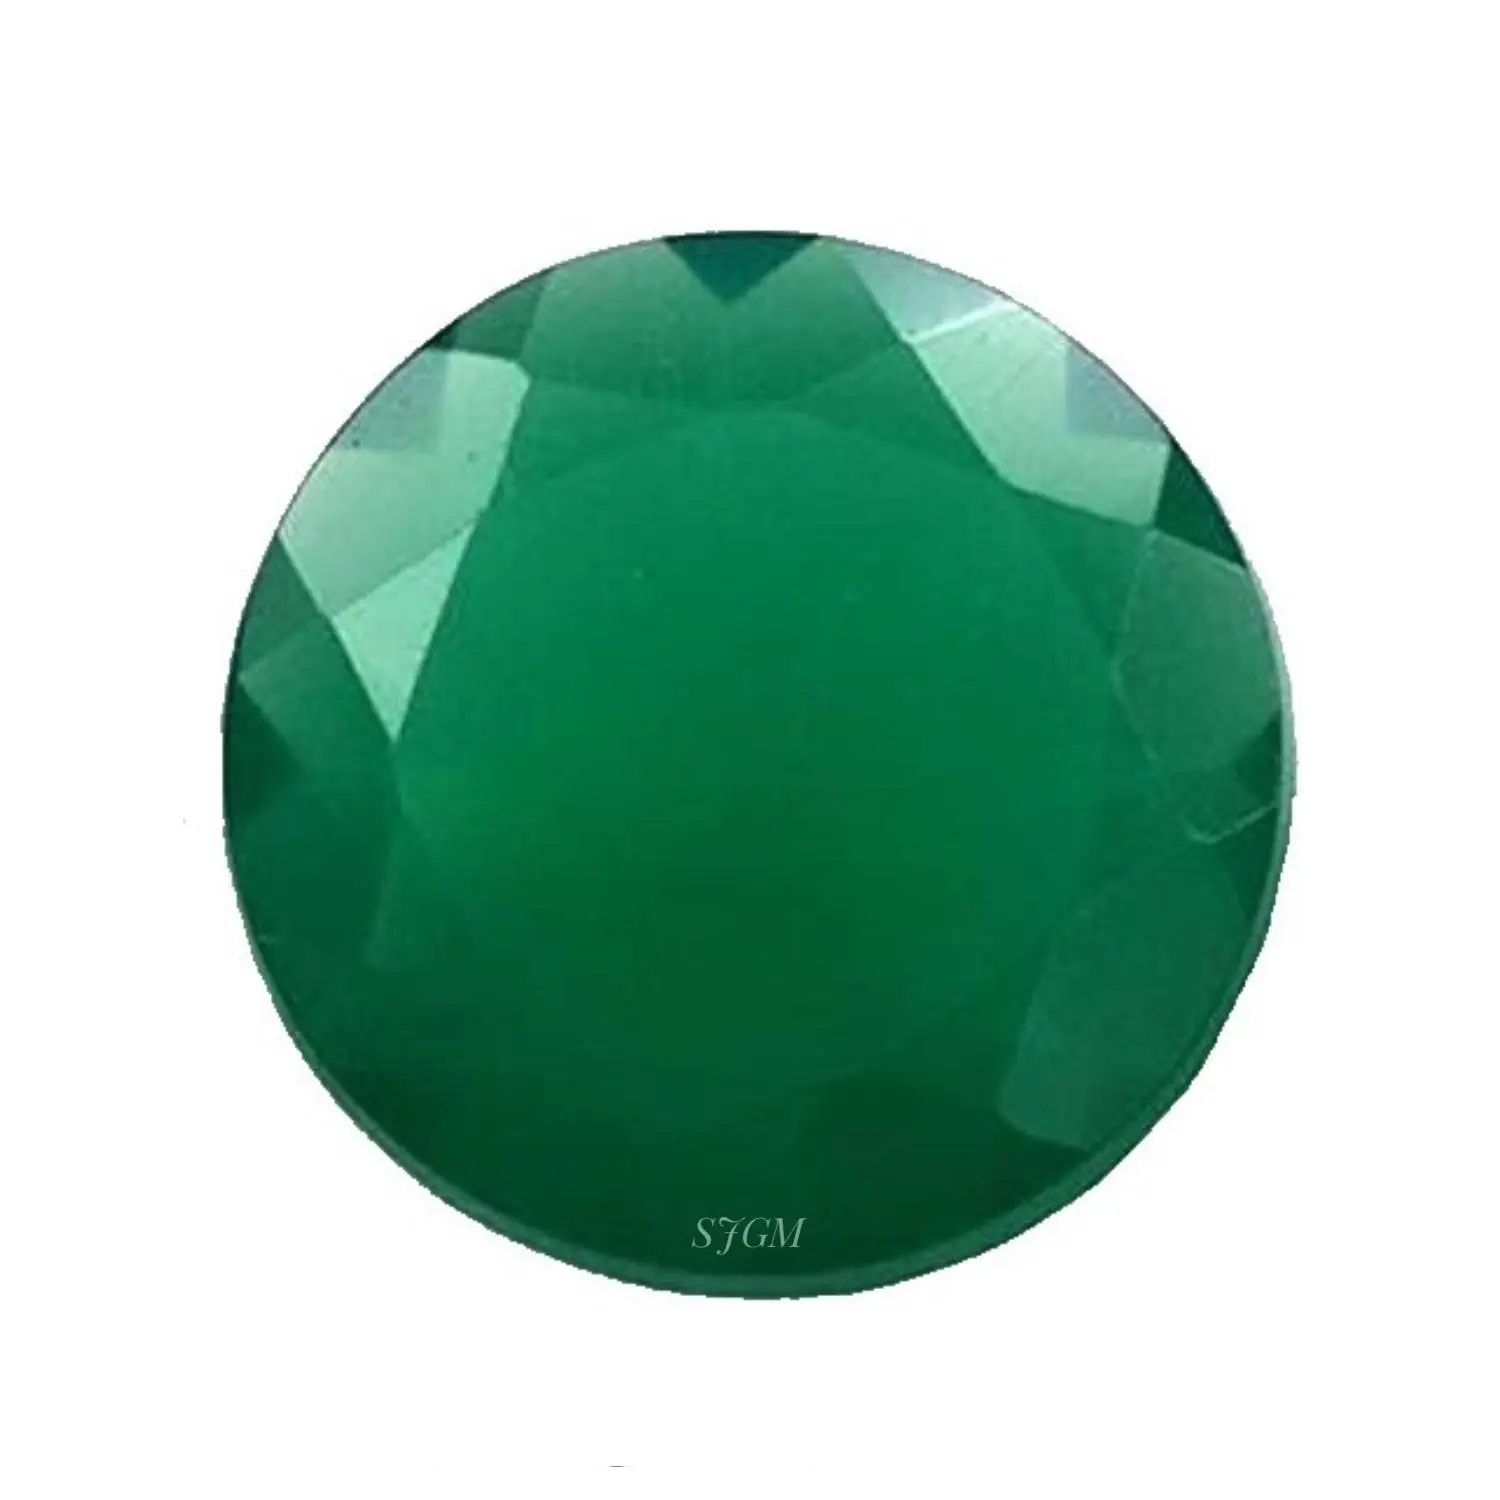 1mm putaran brilian memotong hijau alami/merah/hitam ONYX "grosir harga pabrik kualitas tinggi batu permata longgar bersegi" | Onyx